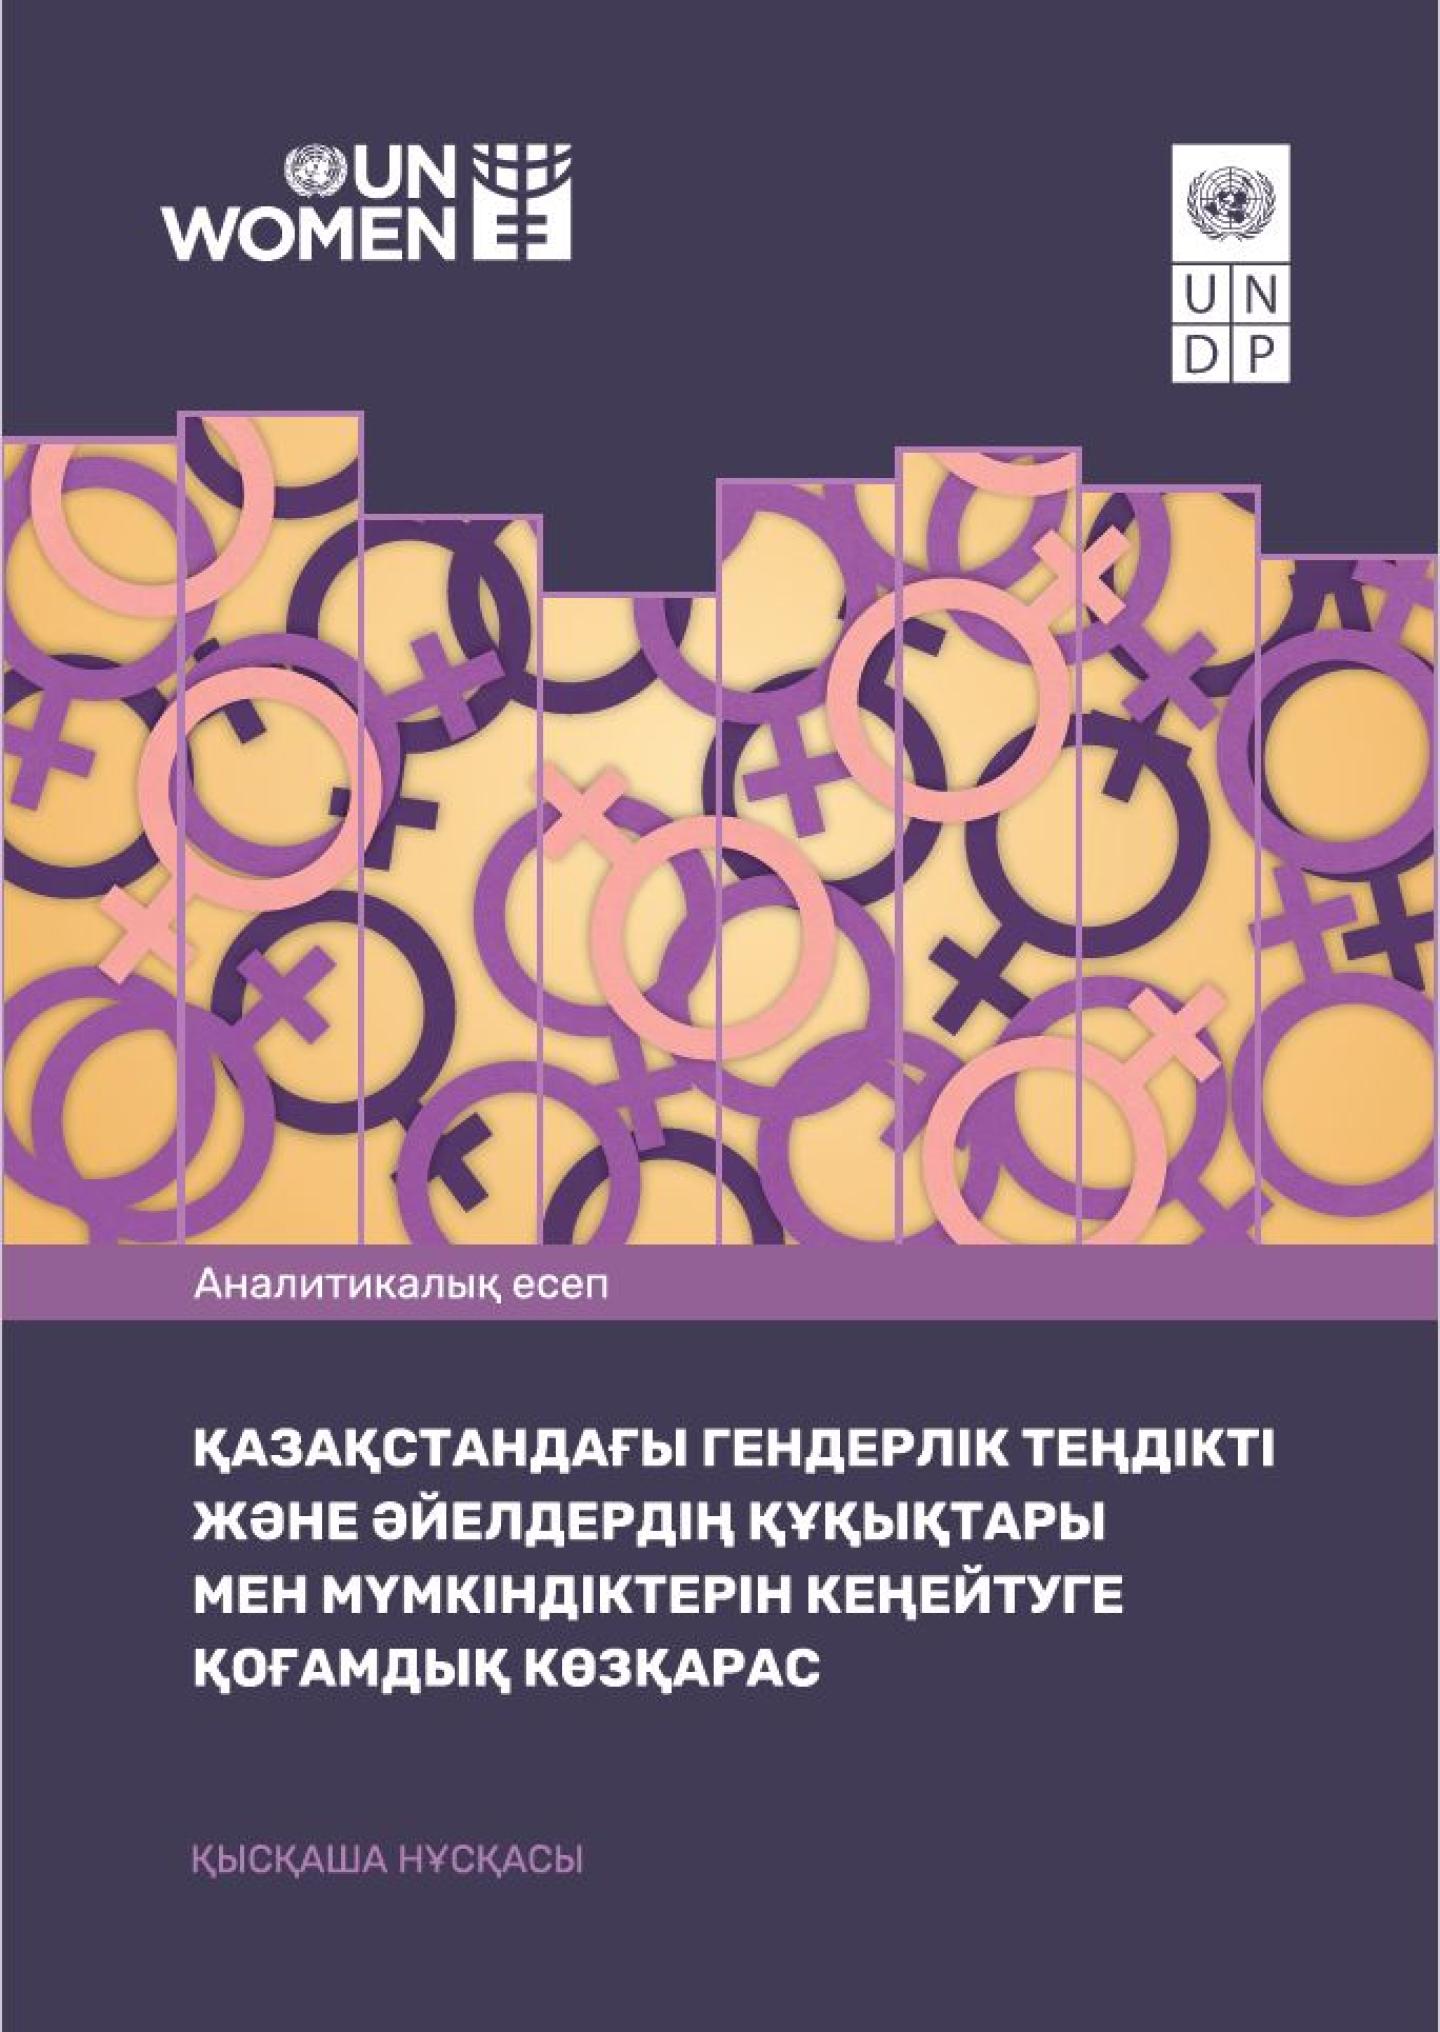 gender equality in kazakhstan essay